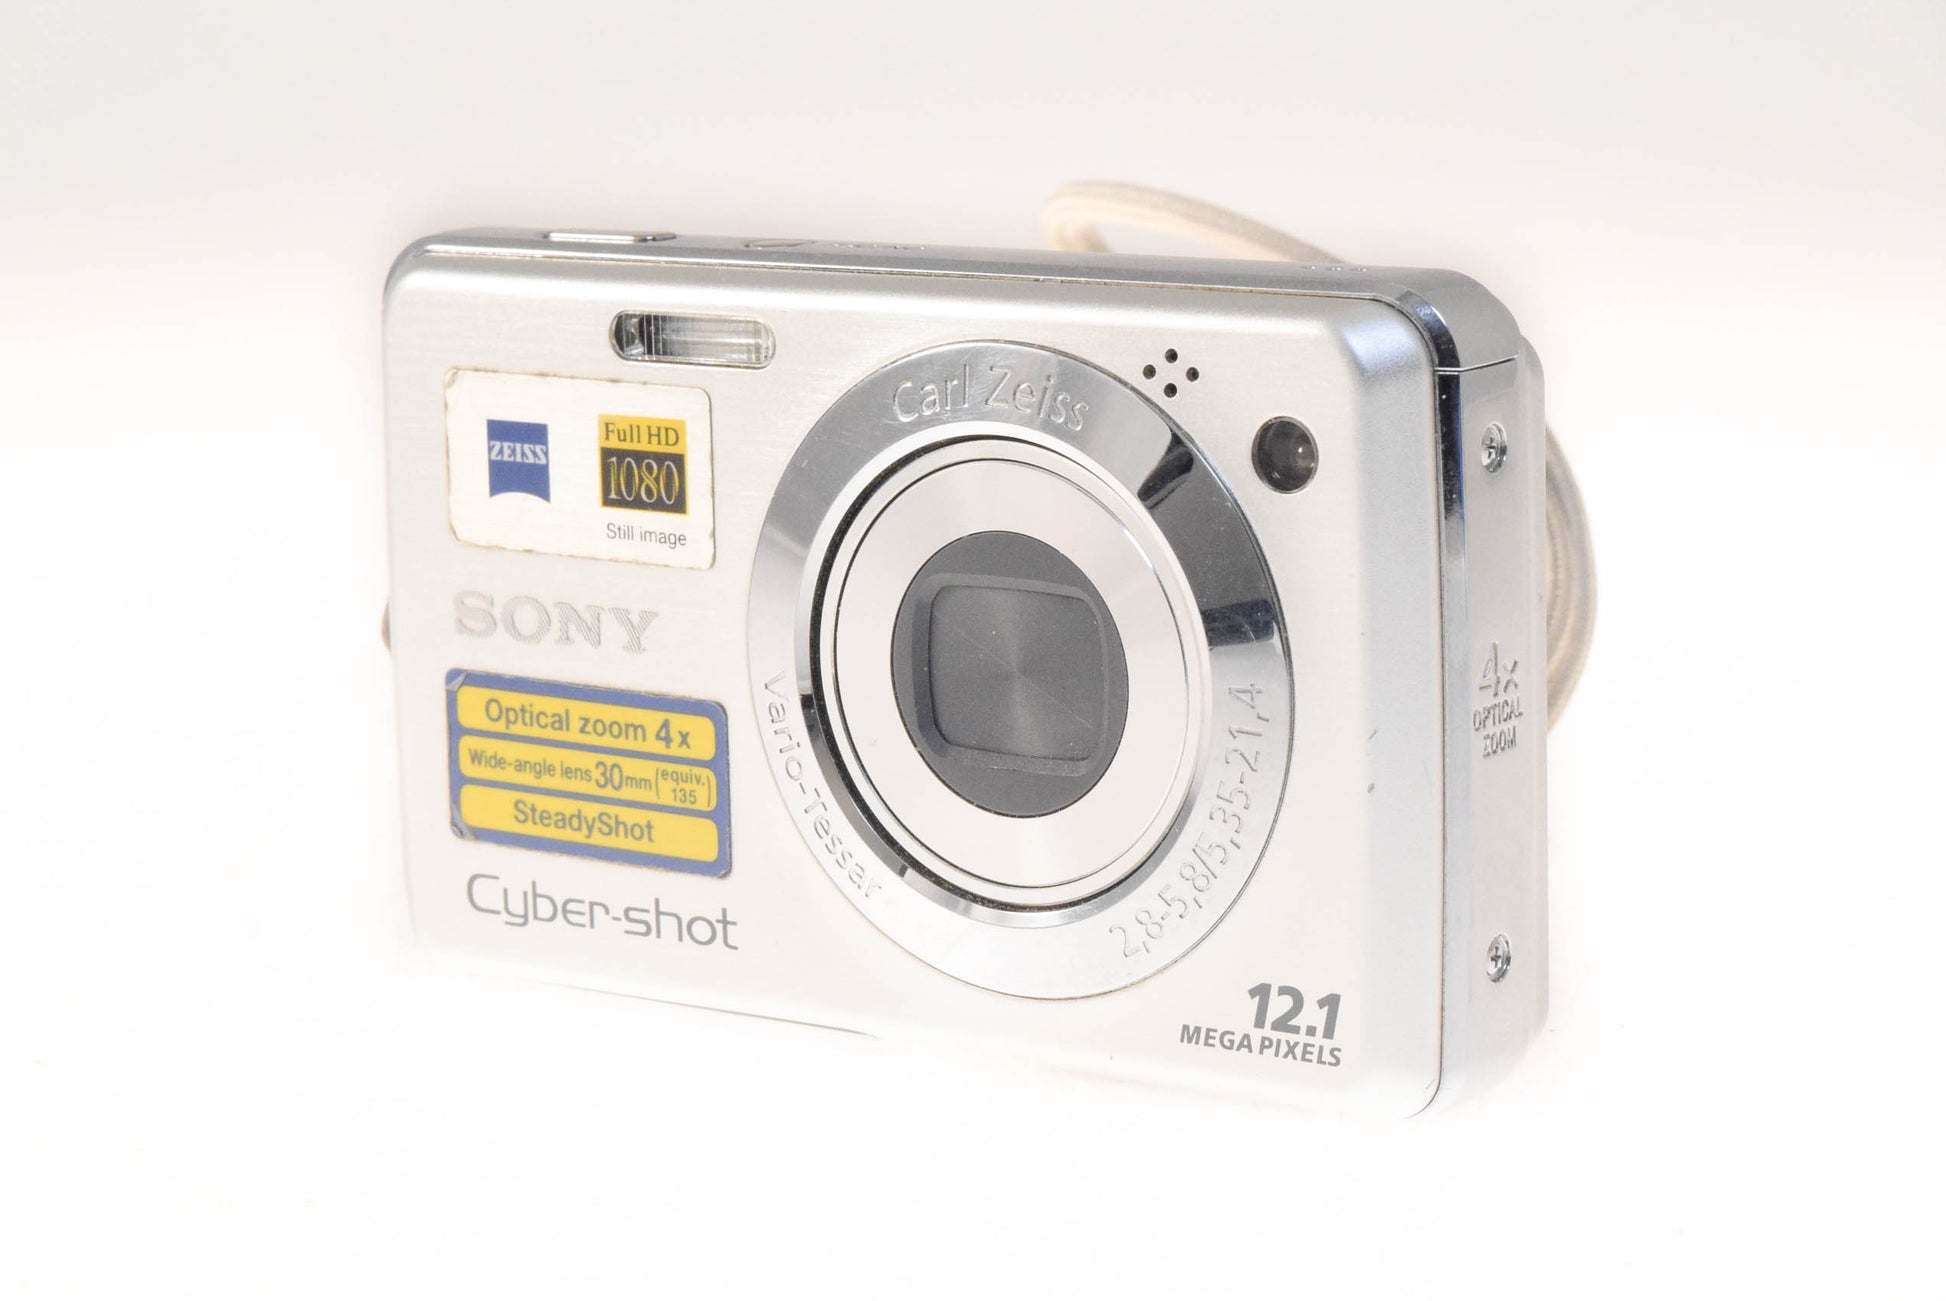 Sony CyberShot DSC-W210 Digital Compact